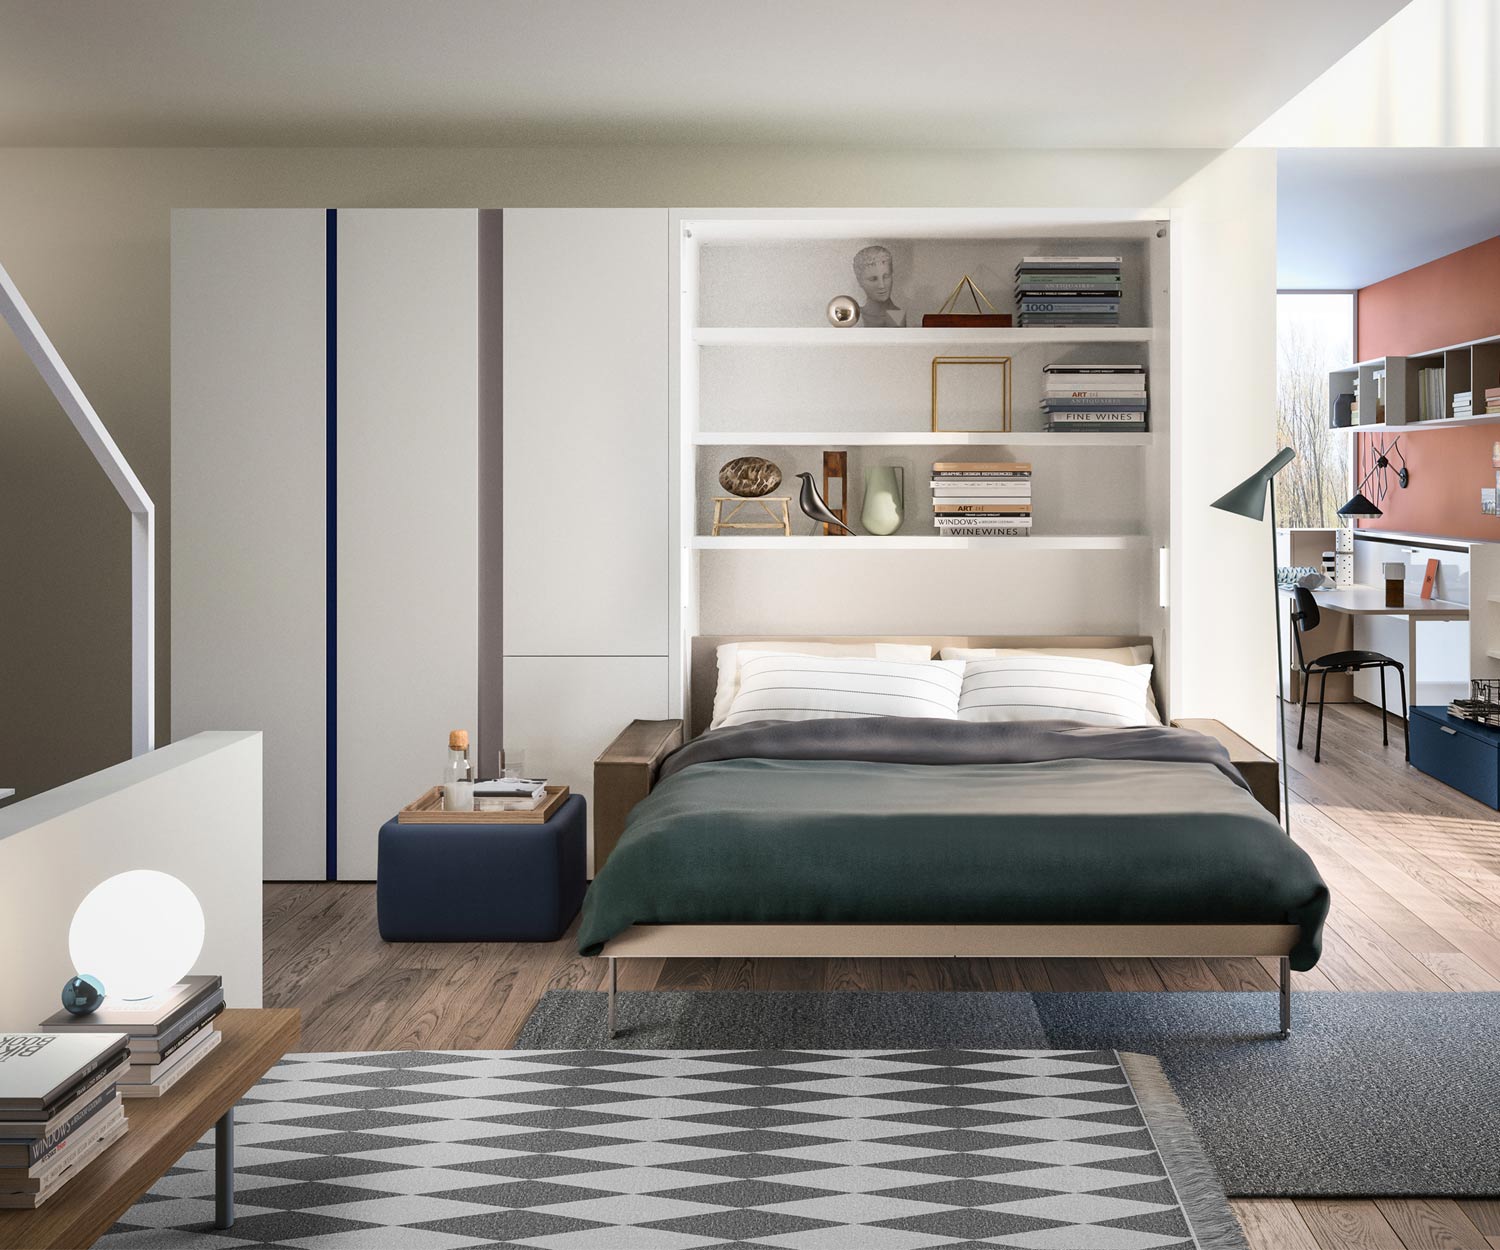 Modern Clei Penelope 2 designer foldaway bed with sofa 160x200 mattress base